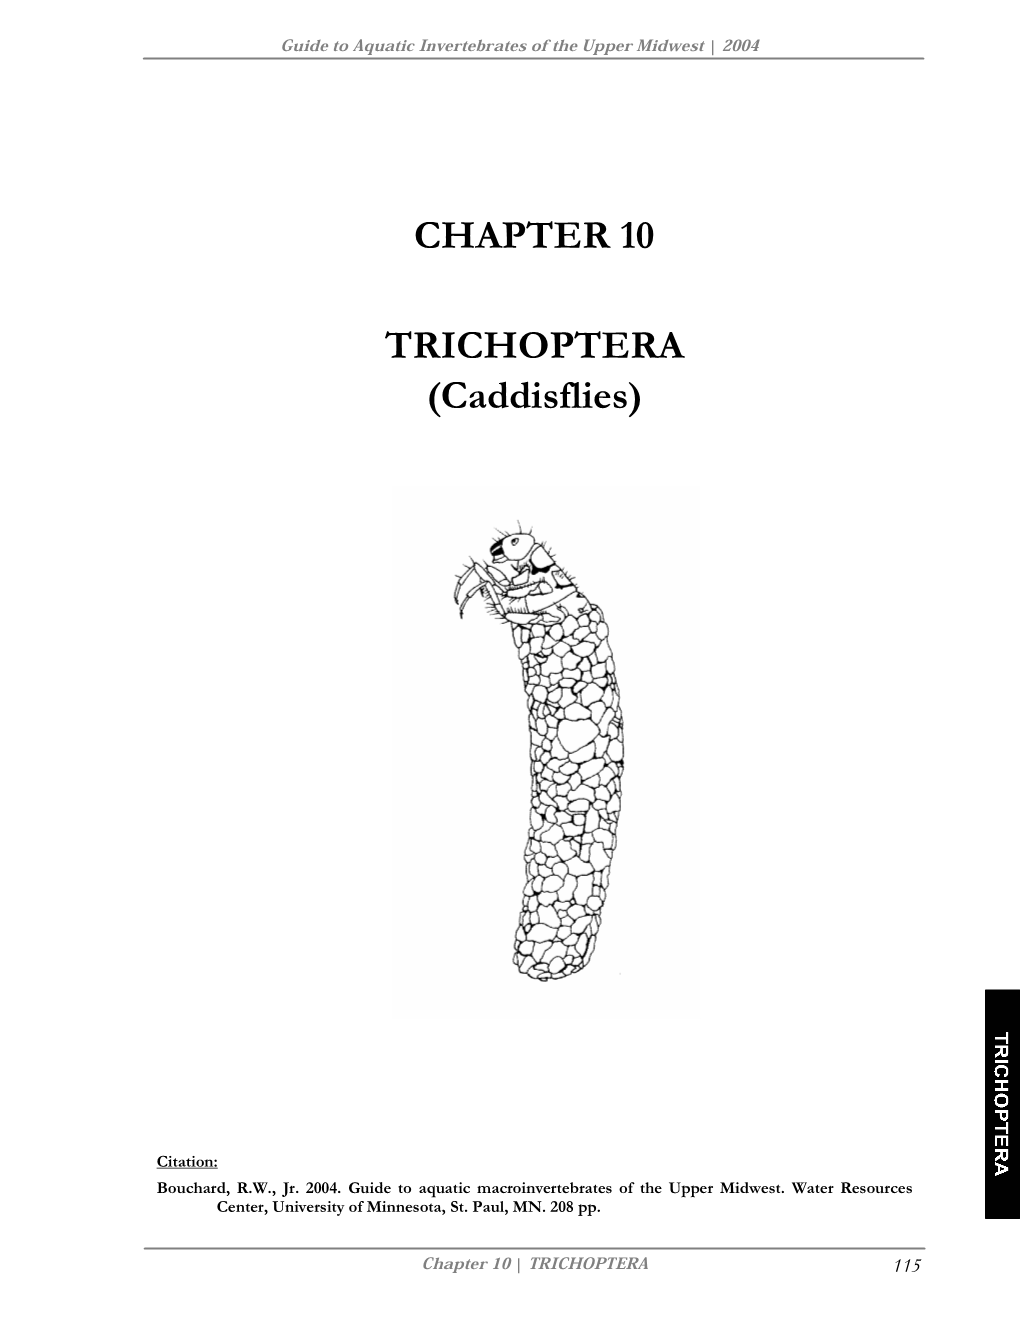 CHAPTER 10 TRICHOPTERA (Caddisflies)